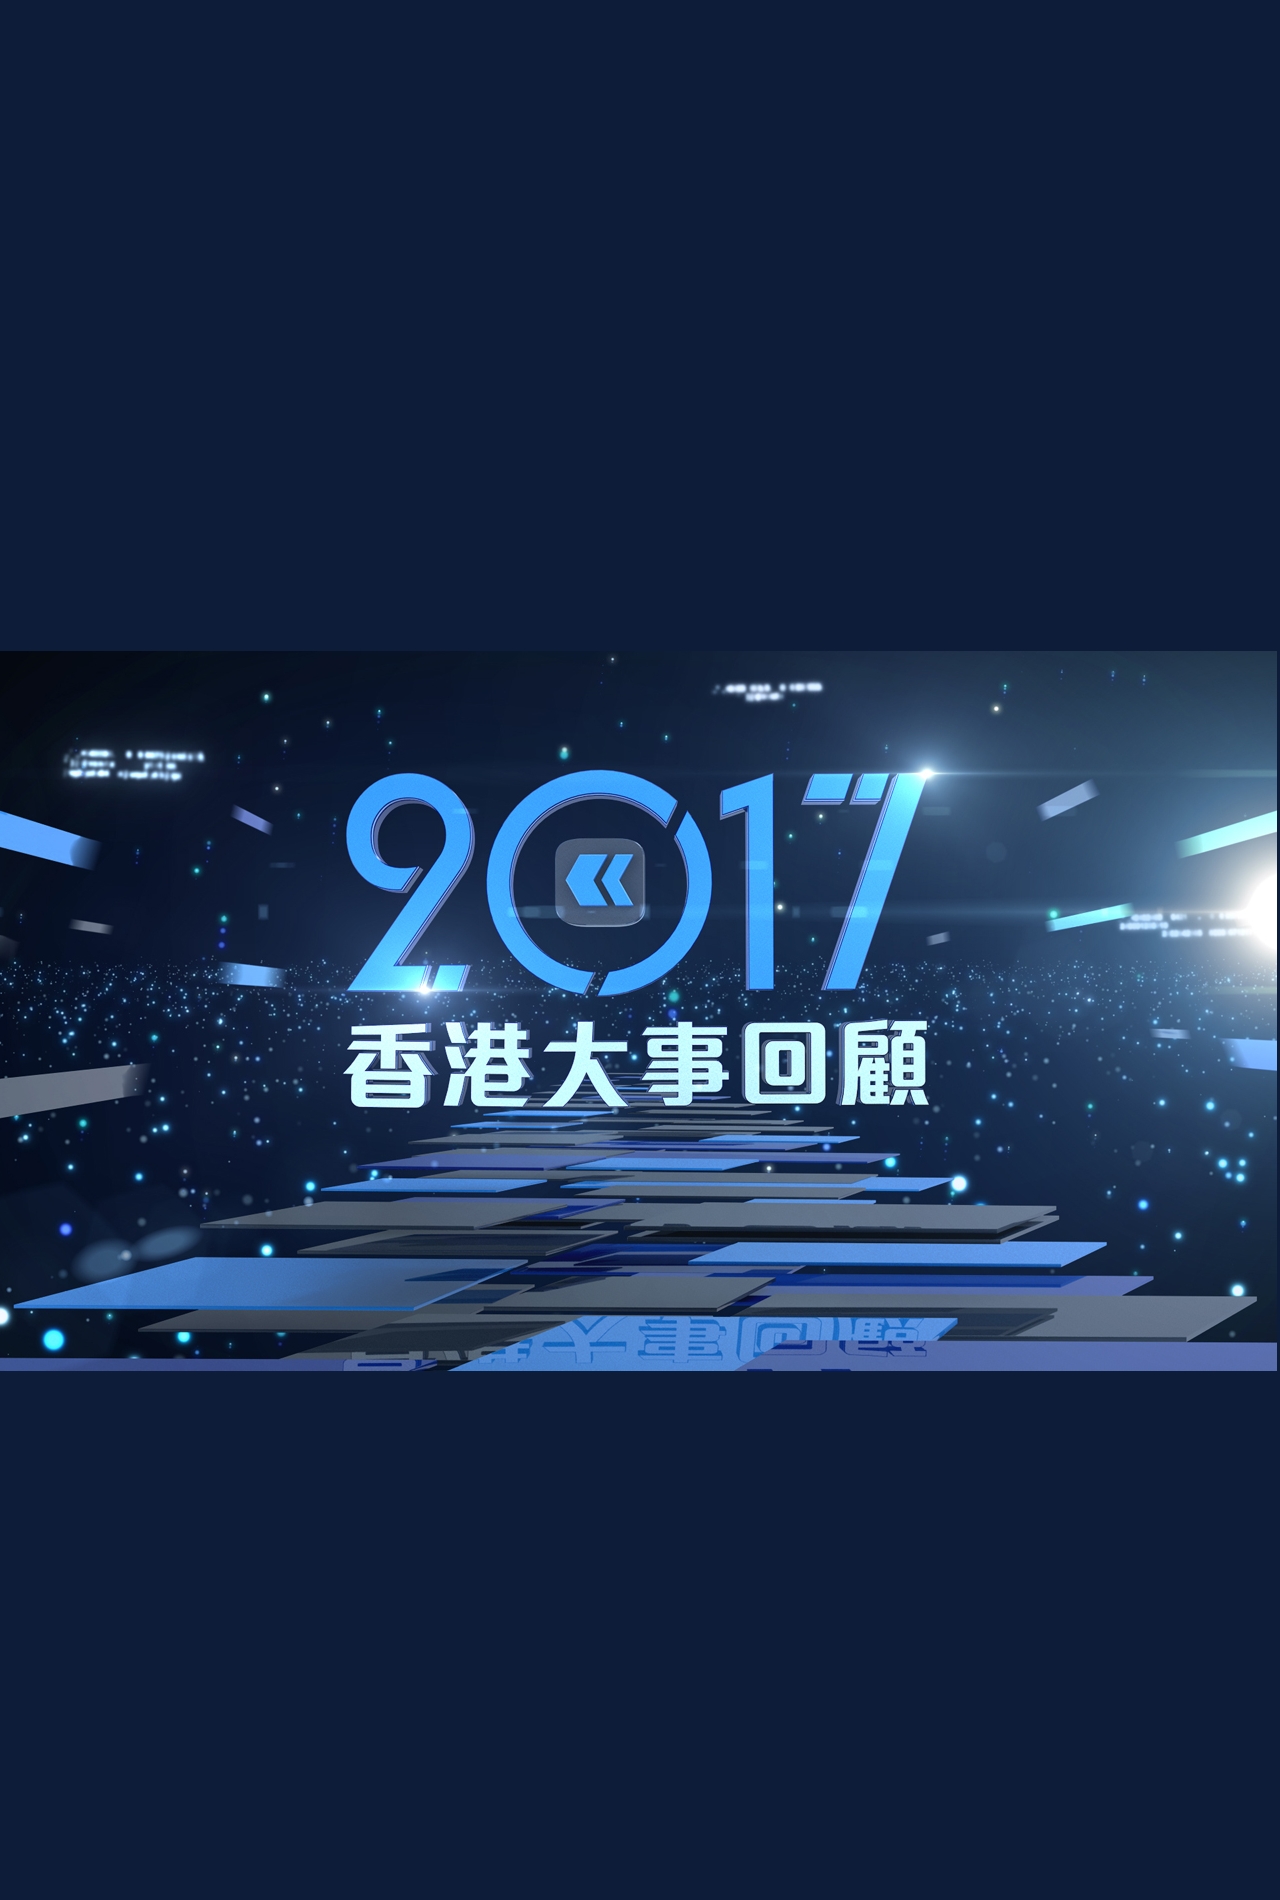 2017 Hong Kong Review - 2017香港大事回顧